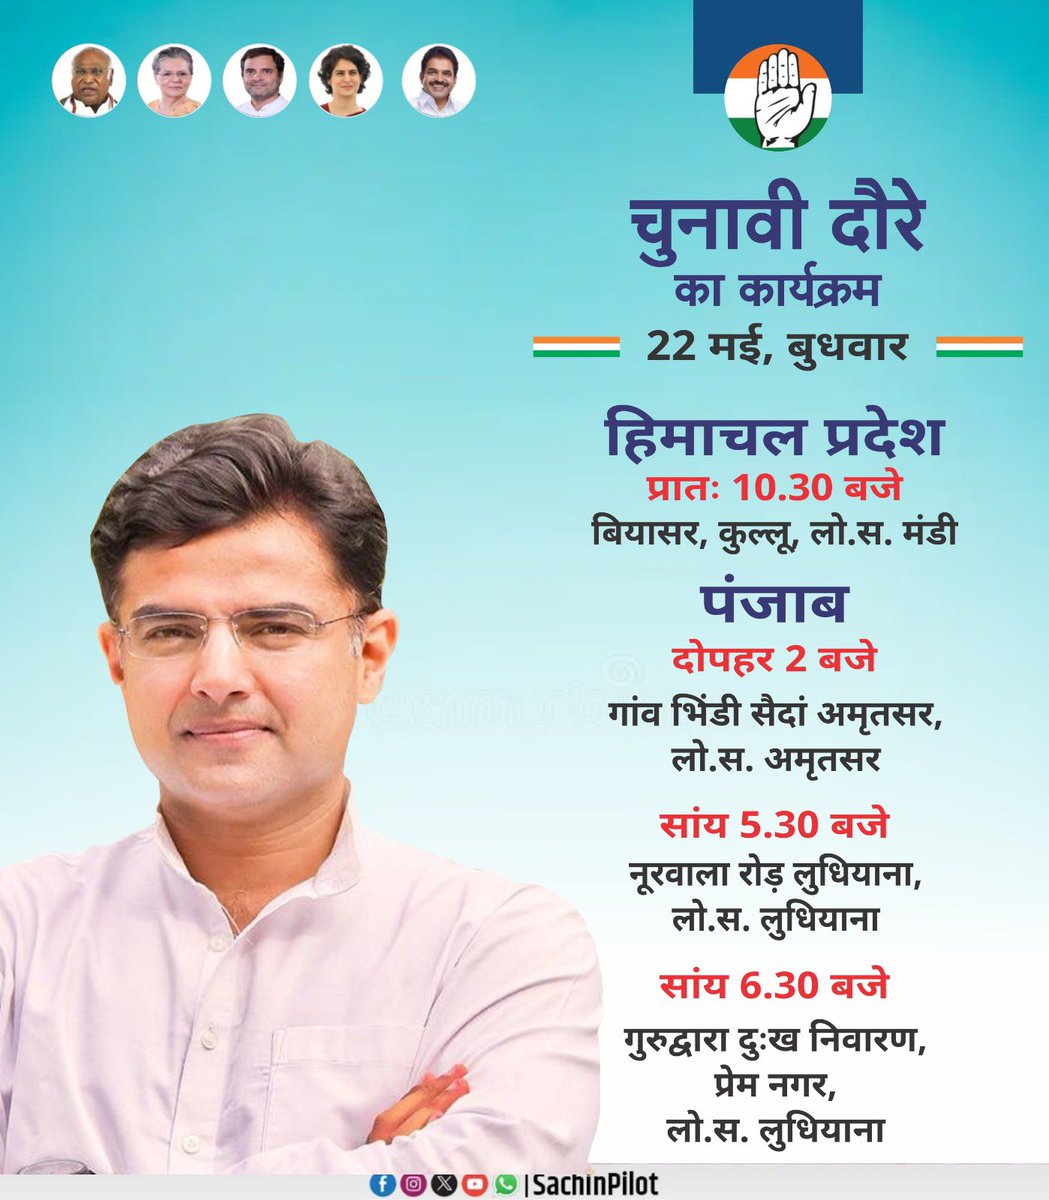 हिमाचल प्रदेश एवं पंजाब के चुनावी दौरे का कार्यक्रम। 🗓 22 मई, बुधवार